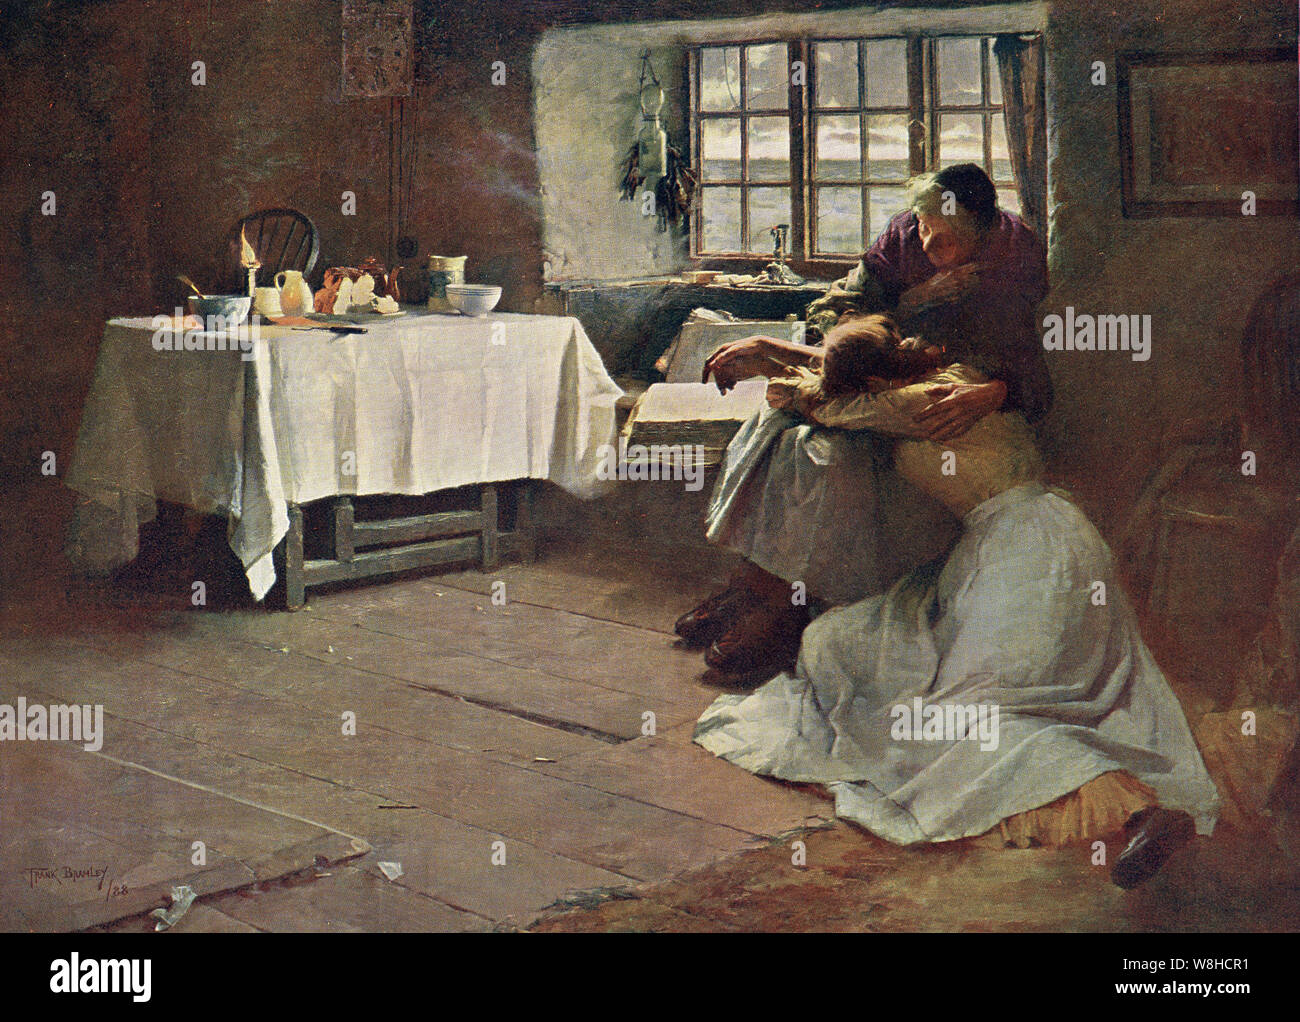 Une aube désespérée par Frank Bramley - 1888 (exposé) Banque D'Images